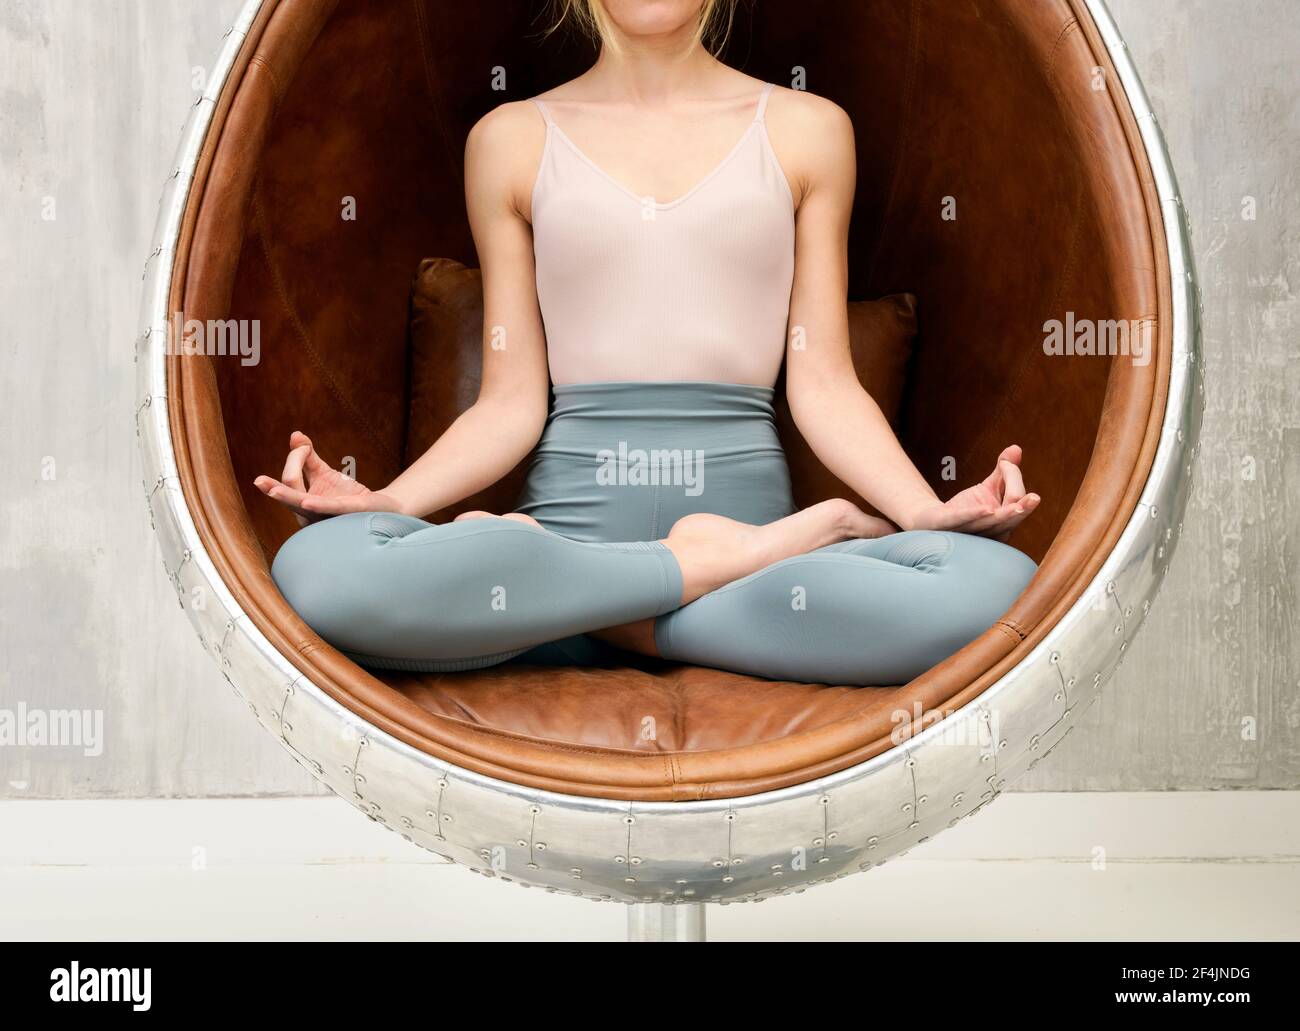 Anonyme Frau, die in der Lotuspose in einem Leder meditiert Stuhl in Nahaufnahme ihrer gekreuzten Beine Und die Hände in einer Gesundheit und Fitness und relaxatio Stockfoto